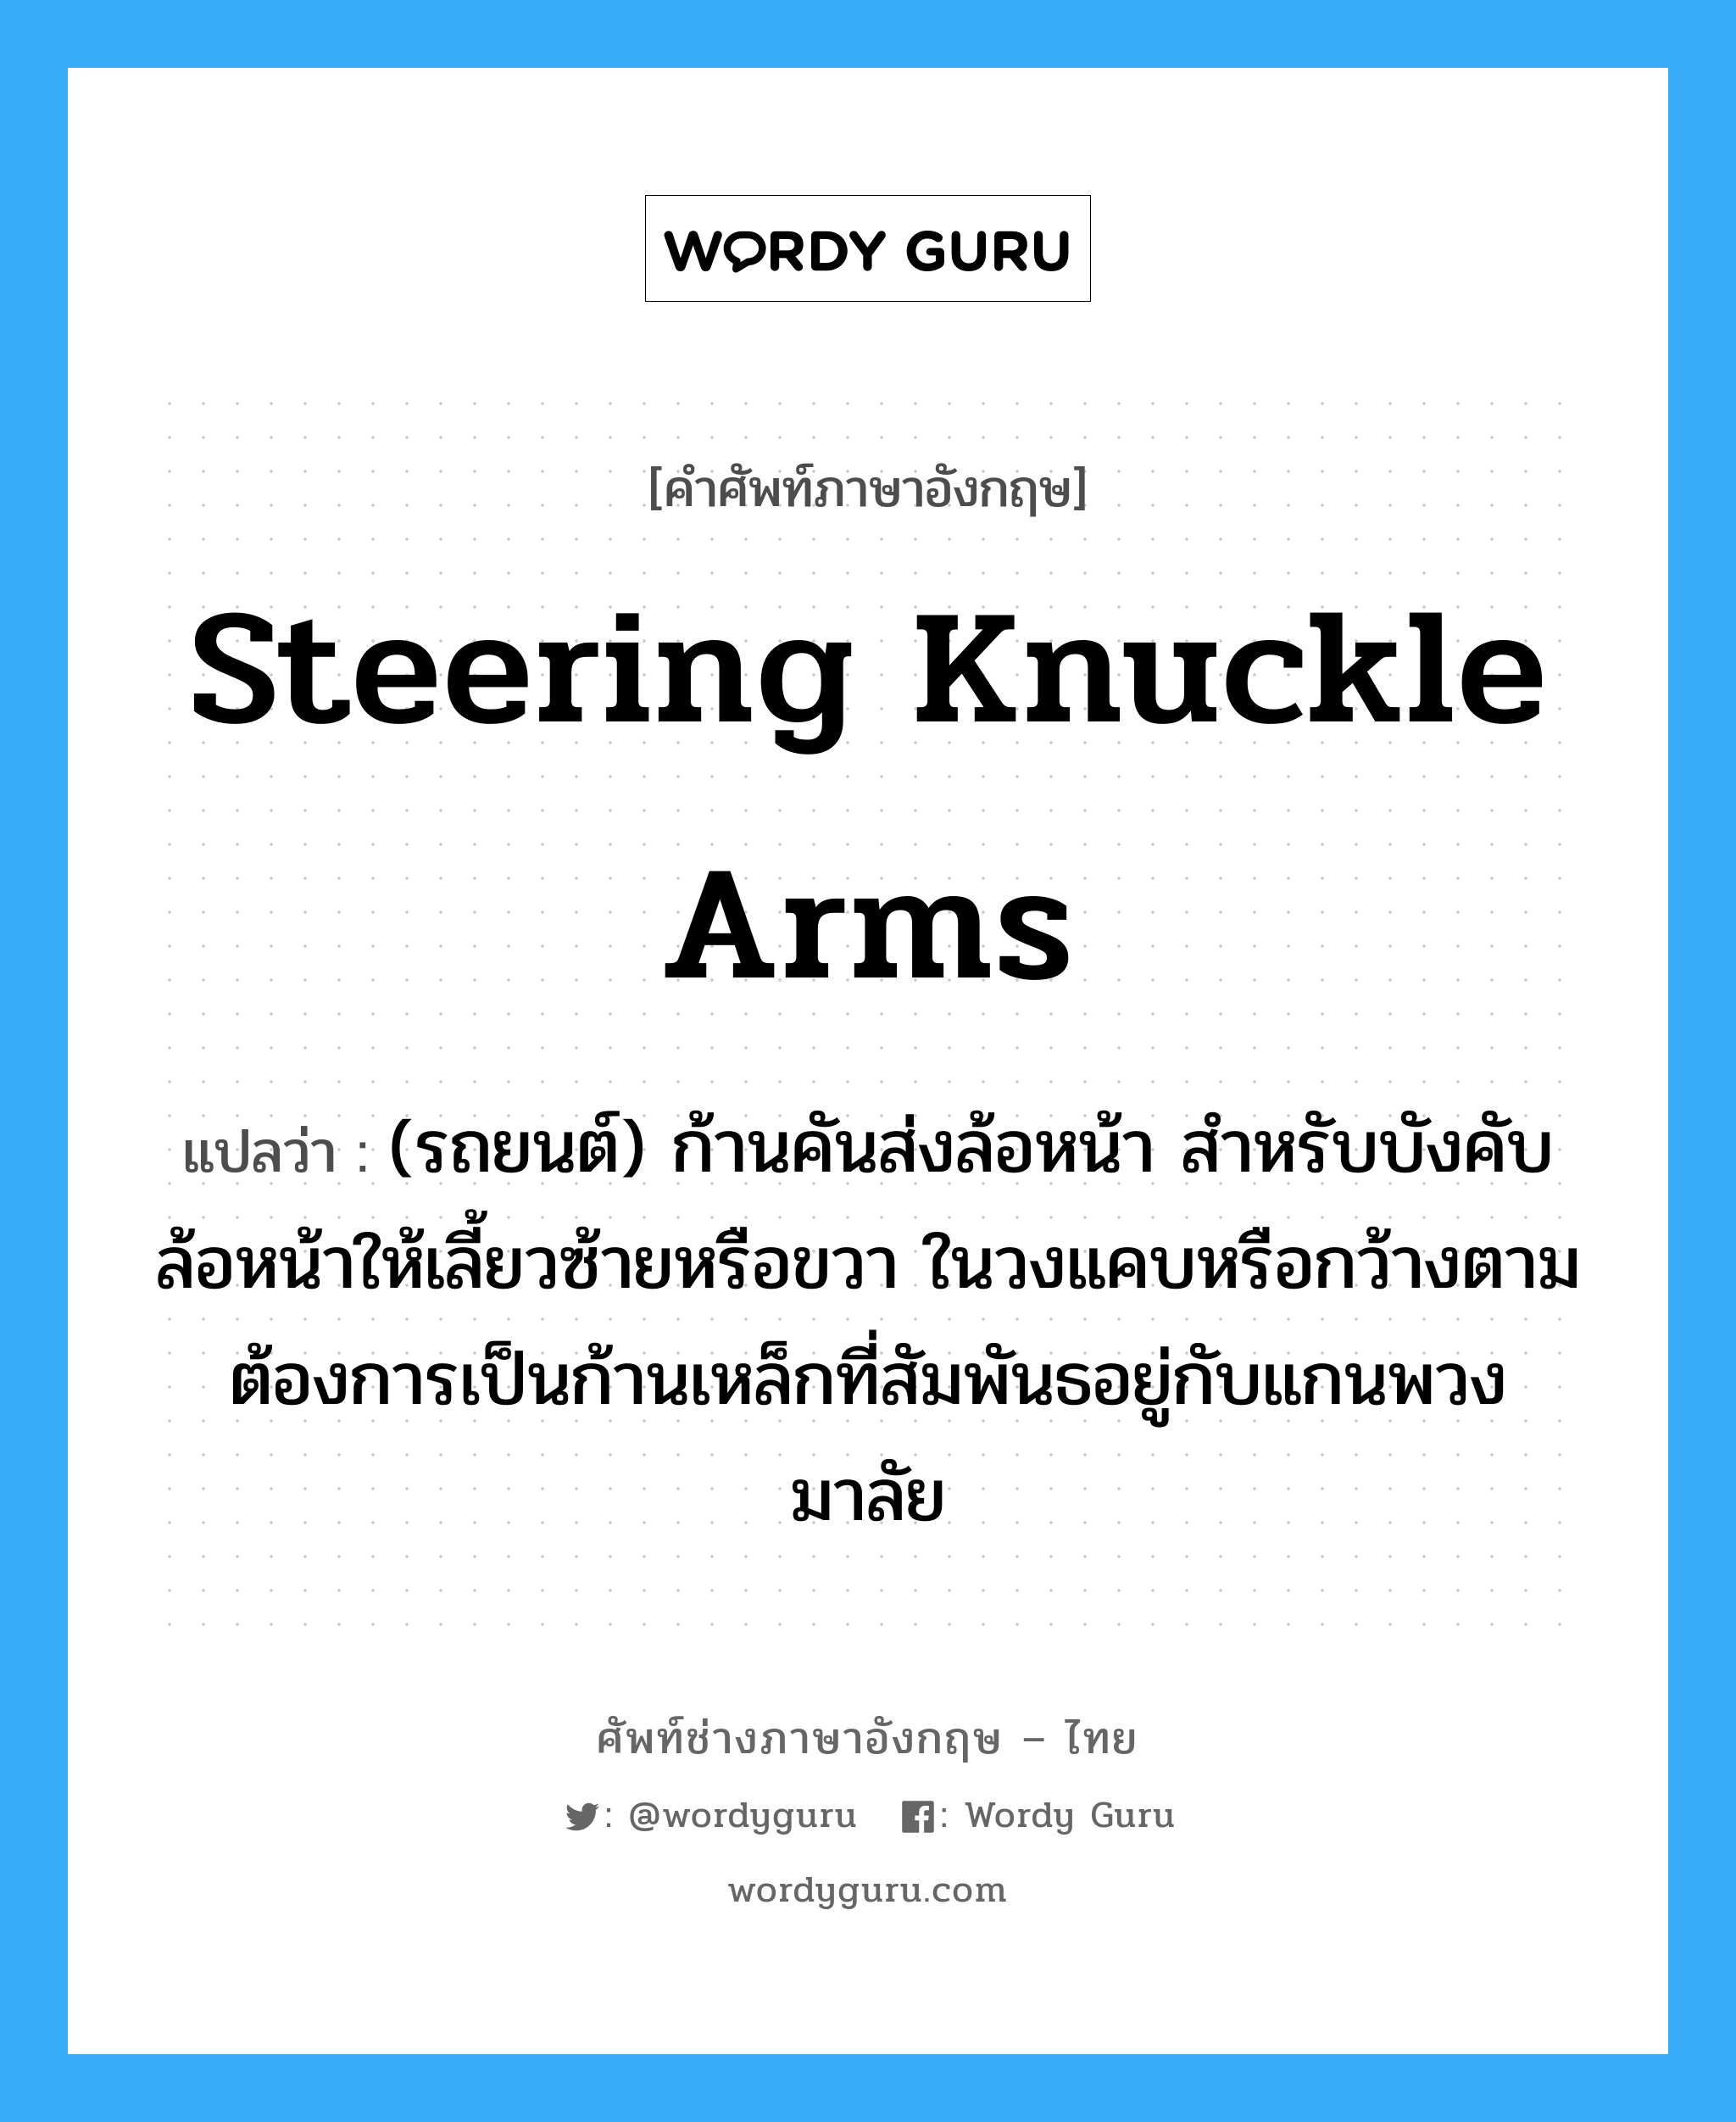 steering knuckle arms แปลว่า?, คำศัพท์ช่างภาษาอังกฤษ - ไทย steering knuckle arms คำศัพท์ภาษาอังกฤษ steering knuckle arms แปลว่า (รถยนต์) ก้านคันส่งล้อหน้า สำหรับบังคับล้อหน้าให้เลี้ยวซ้ายหรือขวา ในวงแคบหรือกว้างตามต้องการเป็นก้านเหล็กที่สัมพันธอยู่กับแกนพวงมาลัย